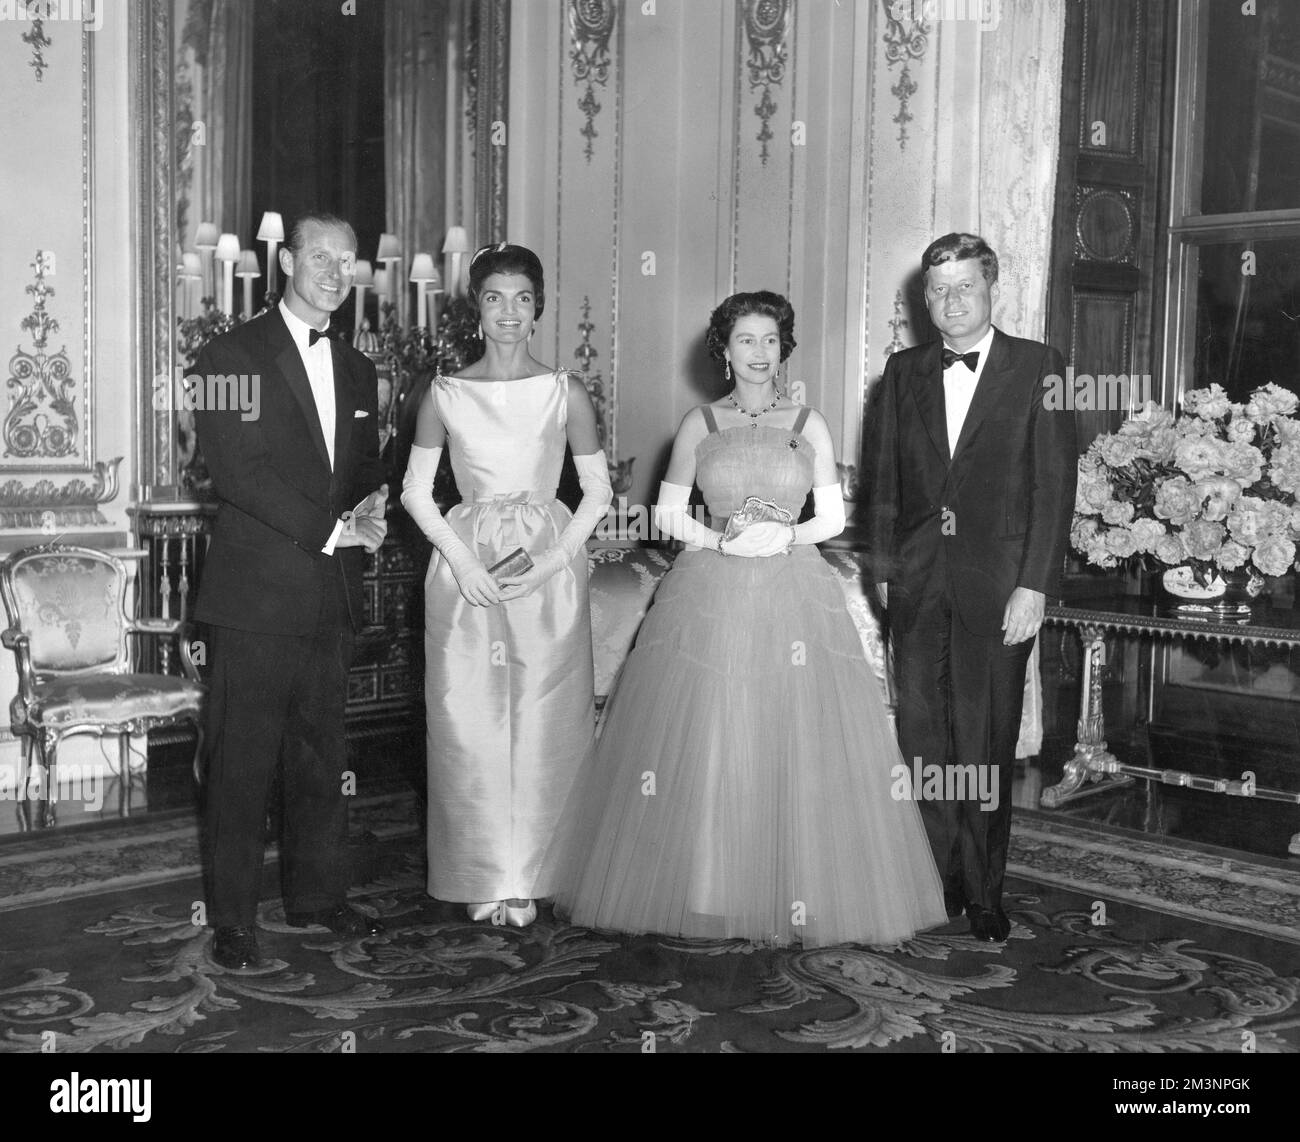 Il presidente John F Kennedy e sua moglie Jackie, nella foto con la regina Elisabetta II e il principe Filippo, duca di Edimburgo, durante una cena di Stato a Buckingham Palace durante una visita dei Kennedys a Londra. Data: 1961 Foto Stock